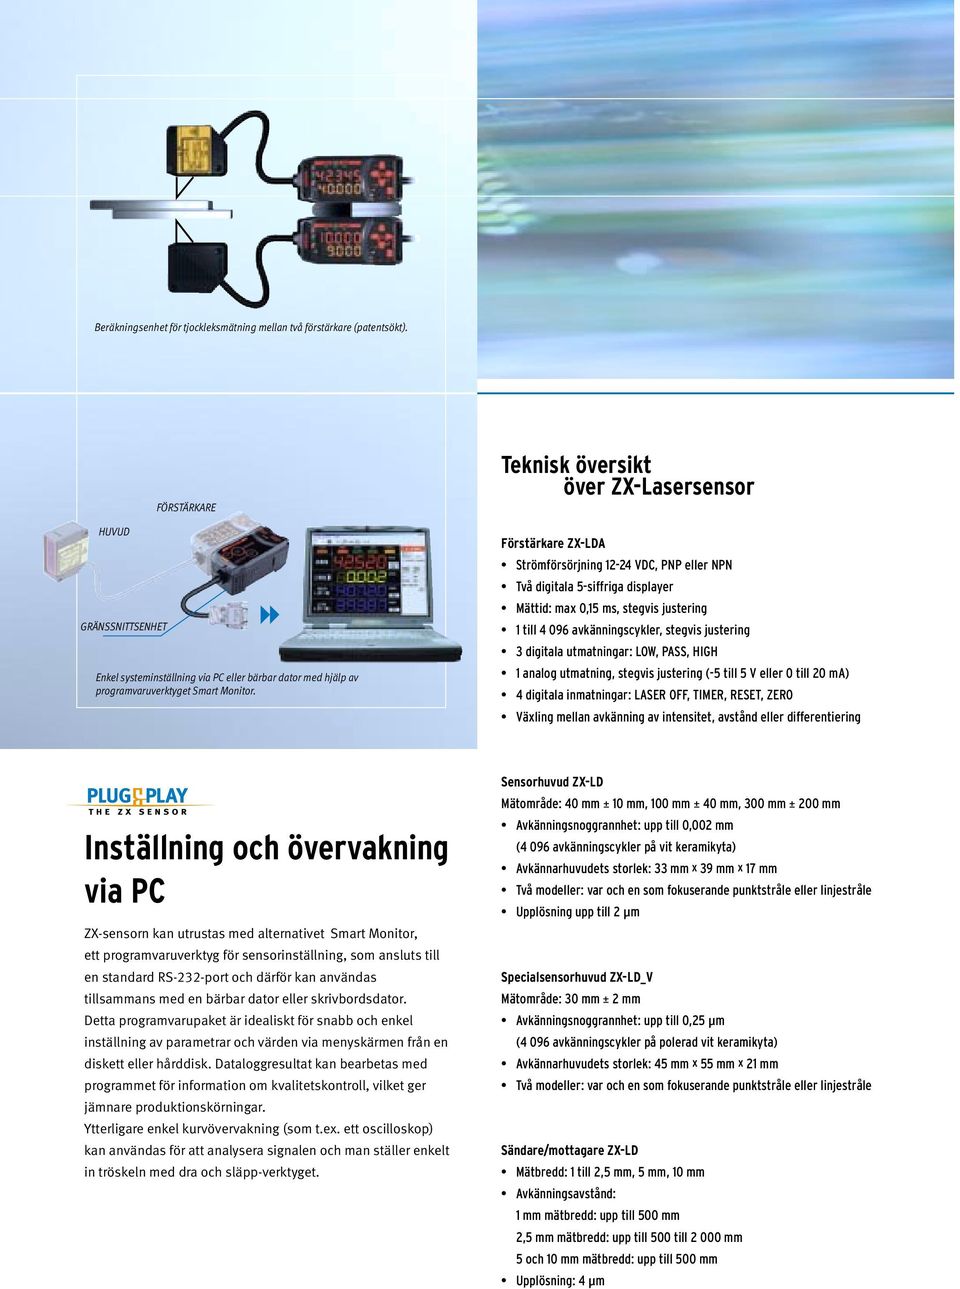 Teknisk översikt över ZX-Lasersensor Förstärkare ZX-LDA Strömförsörjning 12-24 VDC, PNP eller NPN Två digitala 5-siffriga displayer Mättid: max 0,15 ms, stegvis justering 1 till 4 096